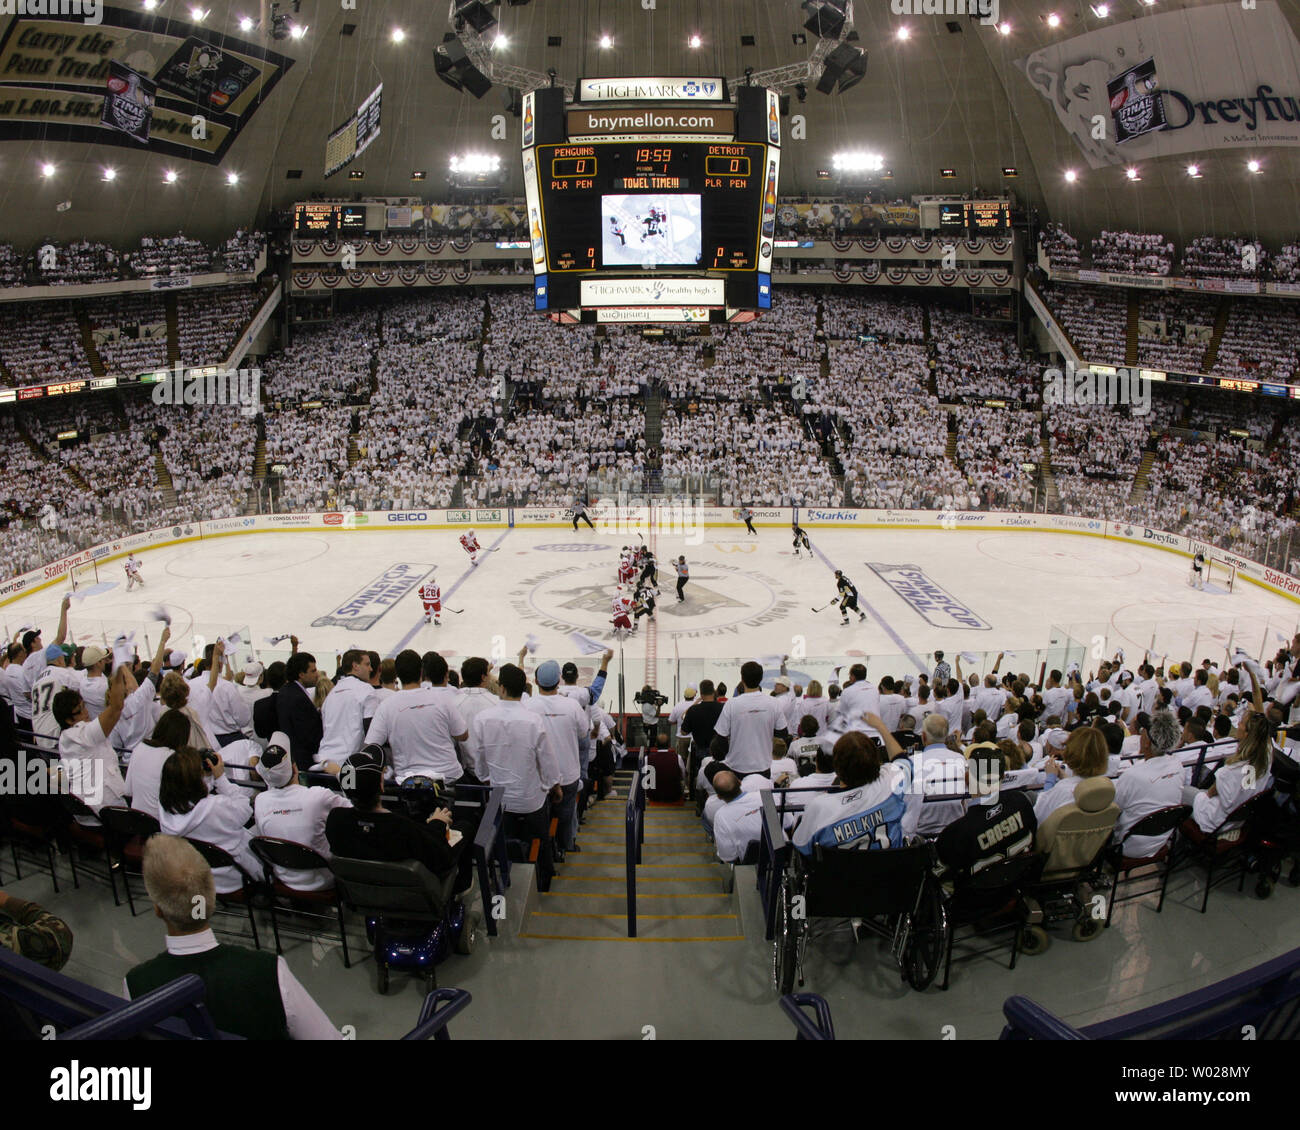 File:Pregame, Pittsburgh Penguins, Joe Louis Arena, Detroit, Michigan  (21516259589).jpg - Wikimedia Commons